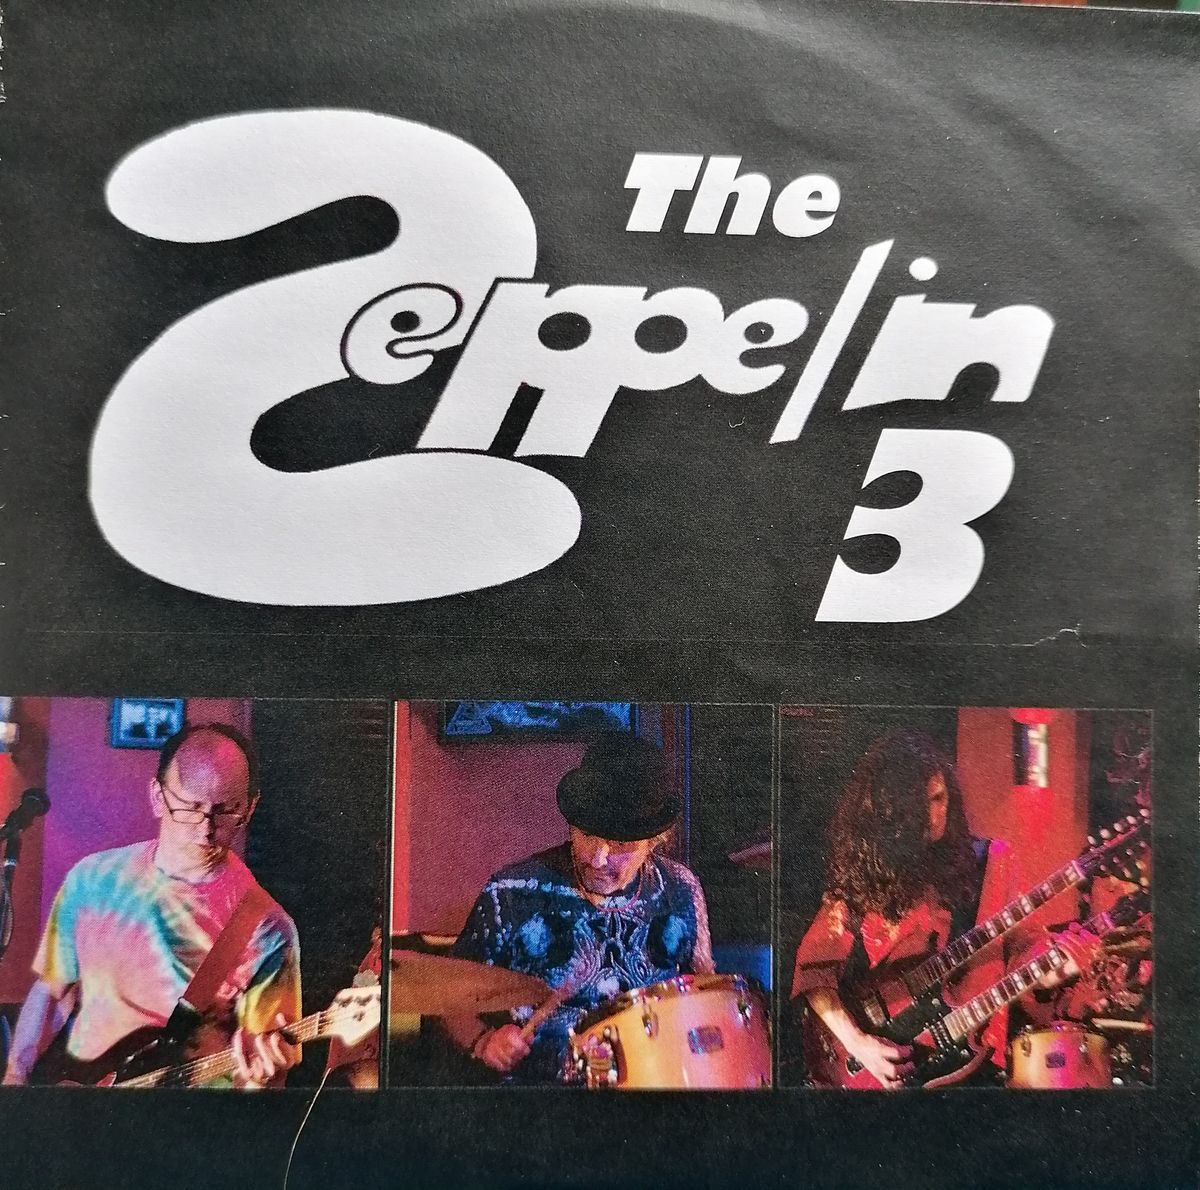 The Zeppelin 3